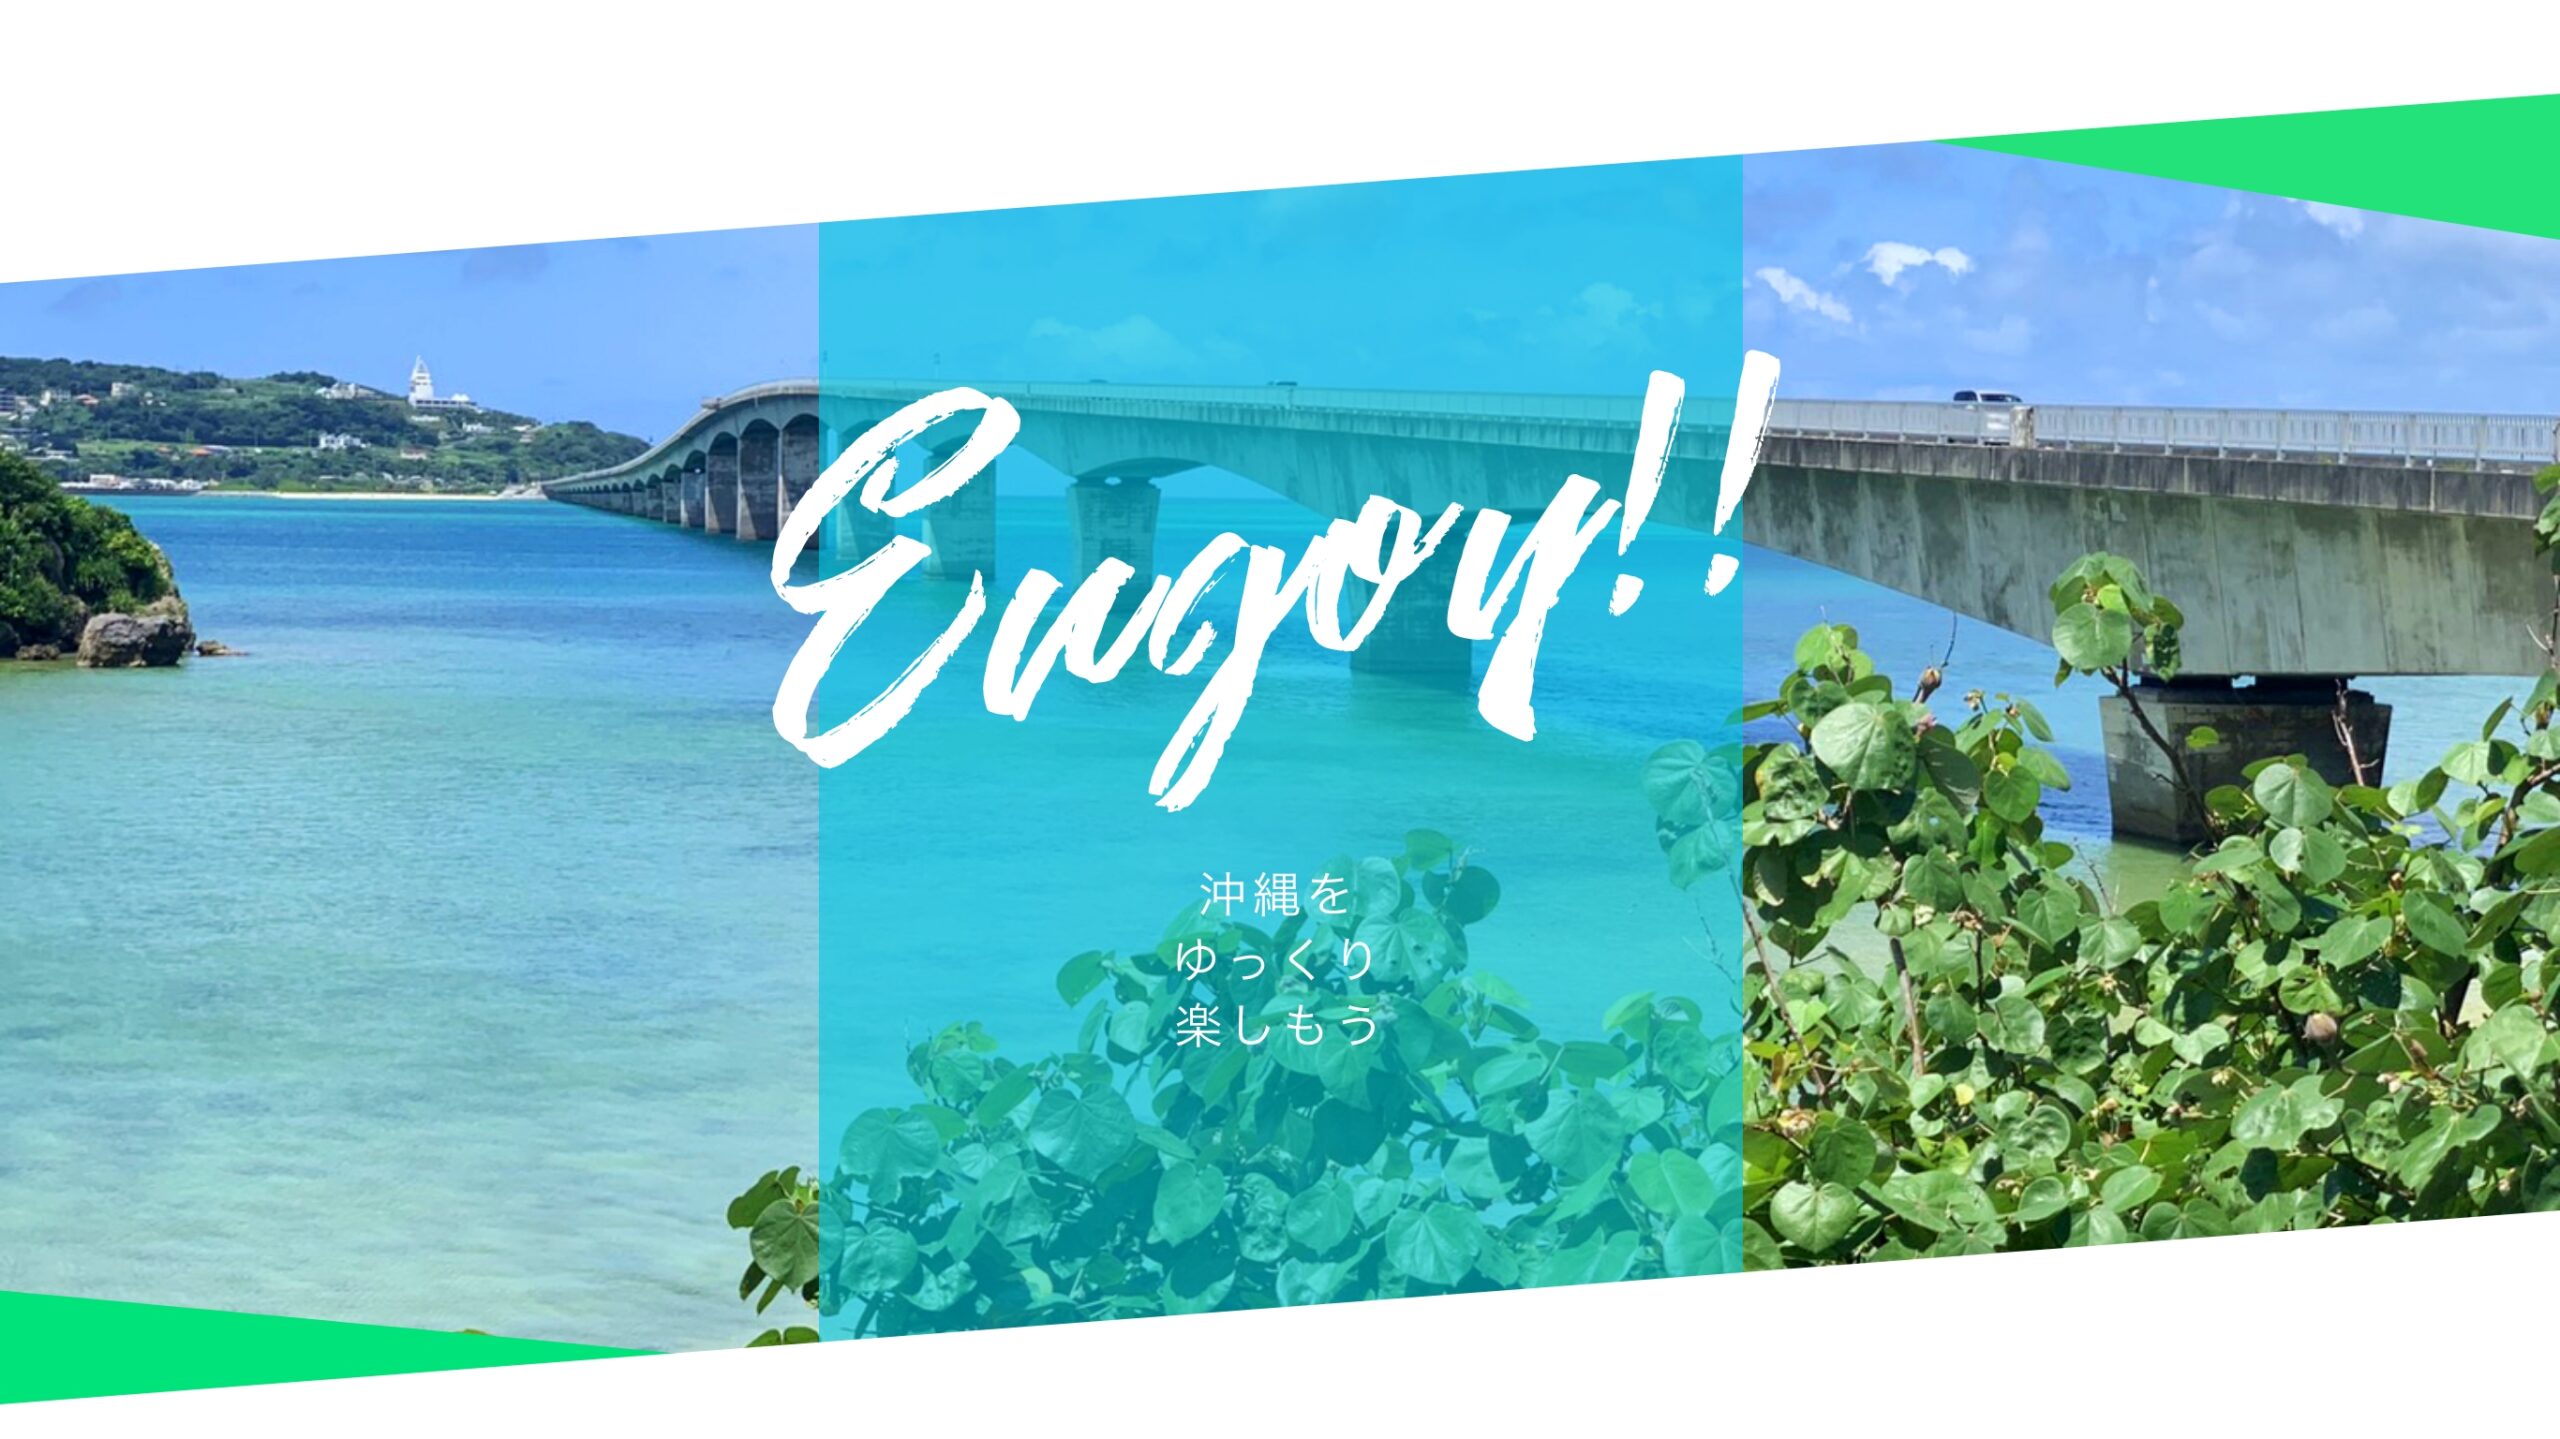 Enjoy 沖縄をゆっくり楽しもう